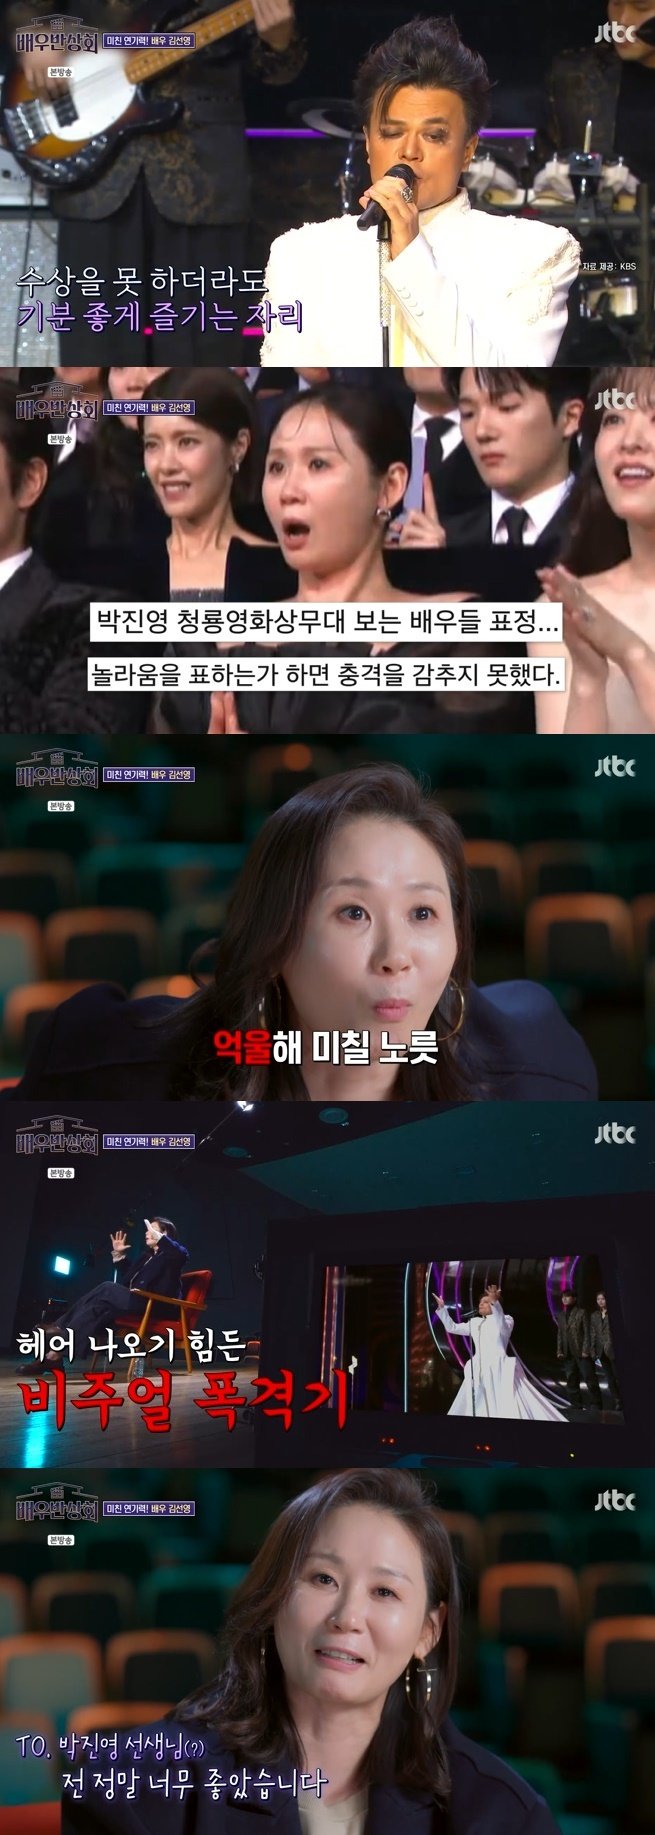 JTBC '배우반상회' 캡처